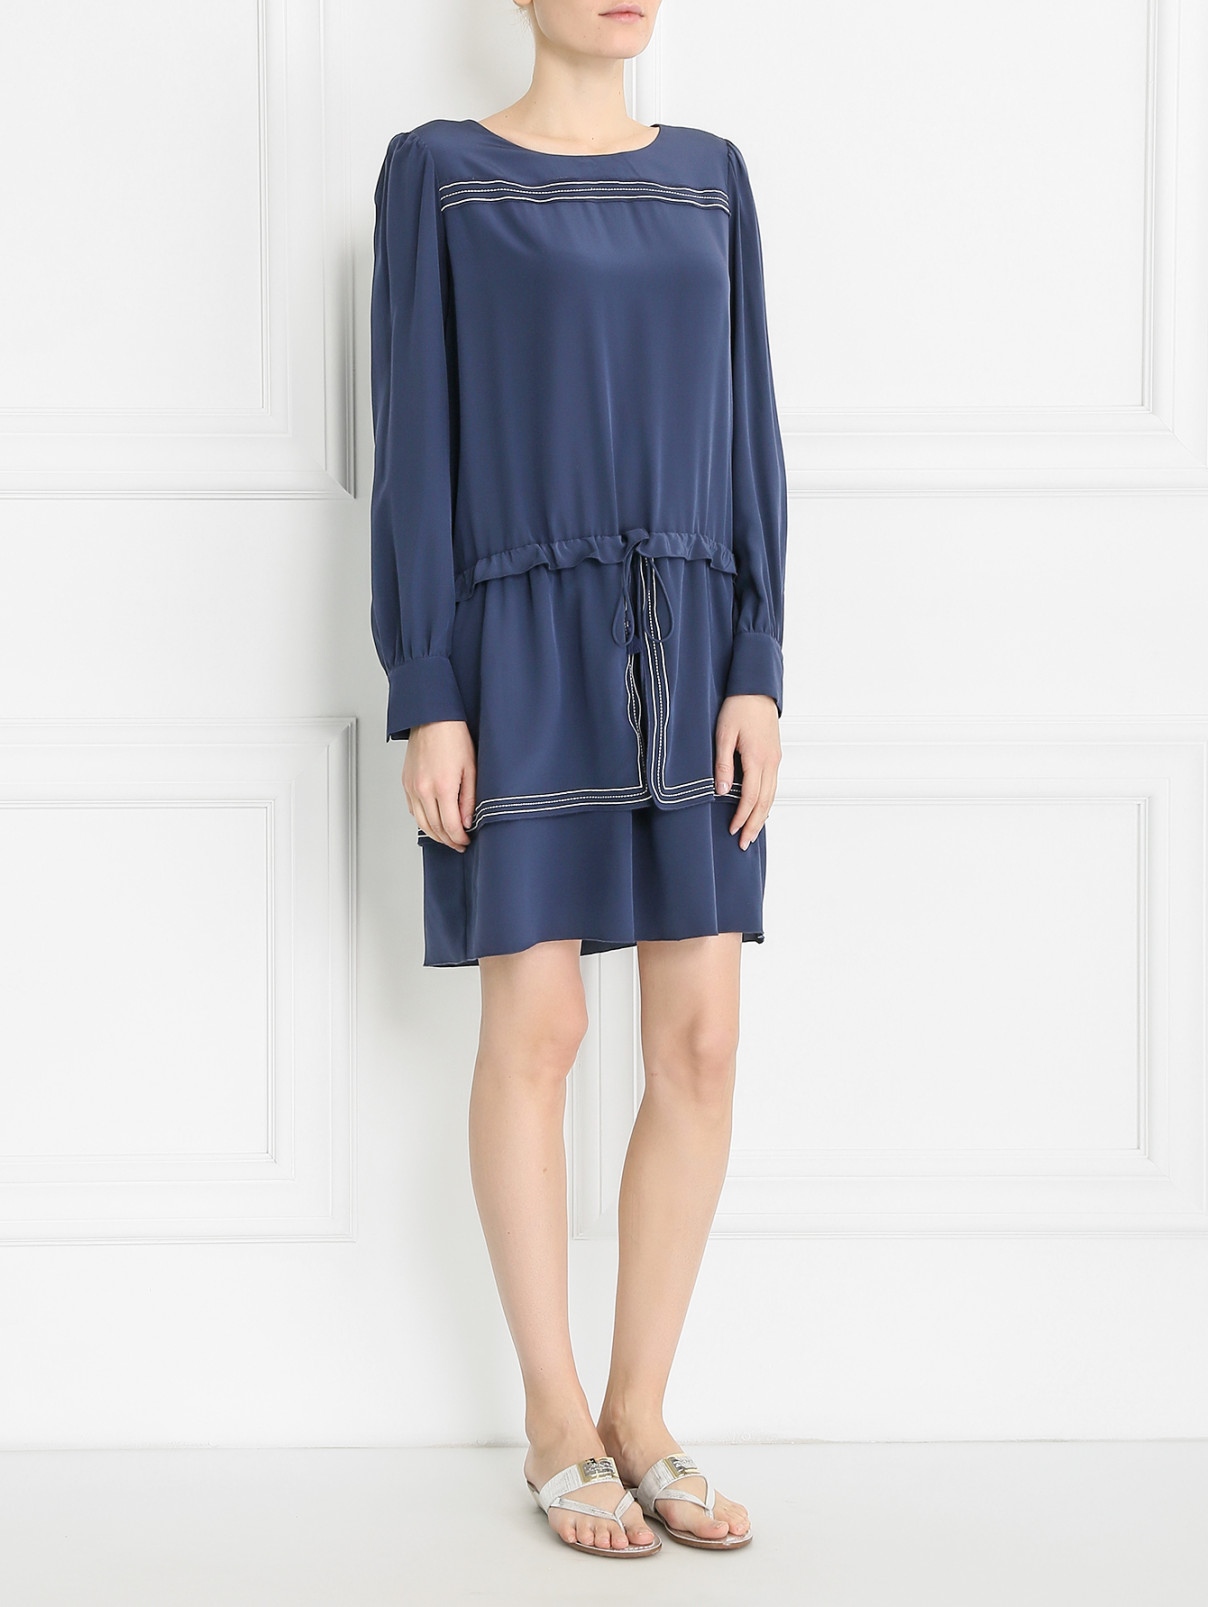 Платье из шелка свободного кроя с контрастной окантовкой See by Chloe  –  Модель Общий вид  – Цвет:  Синий